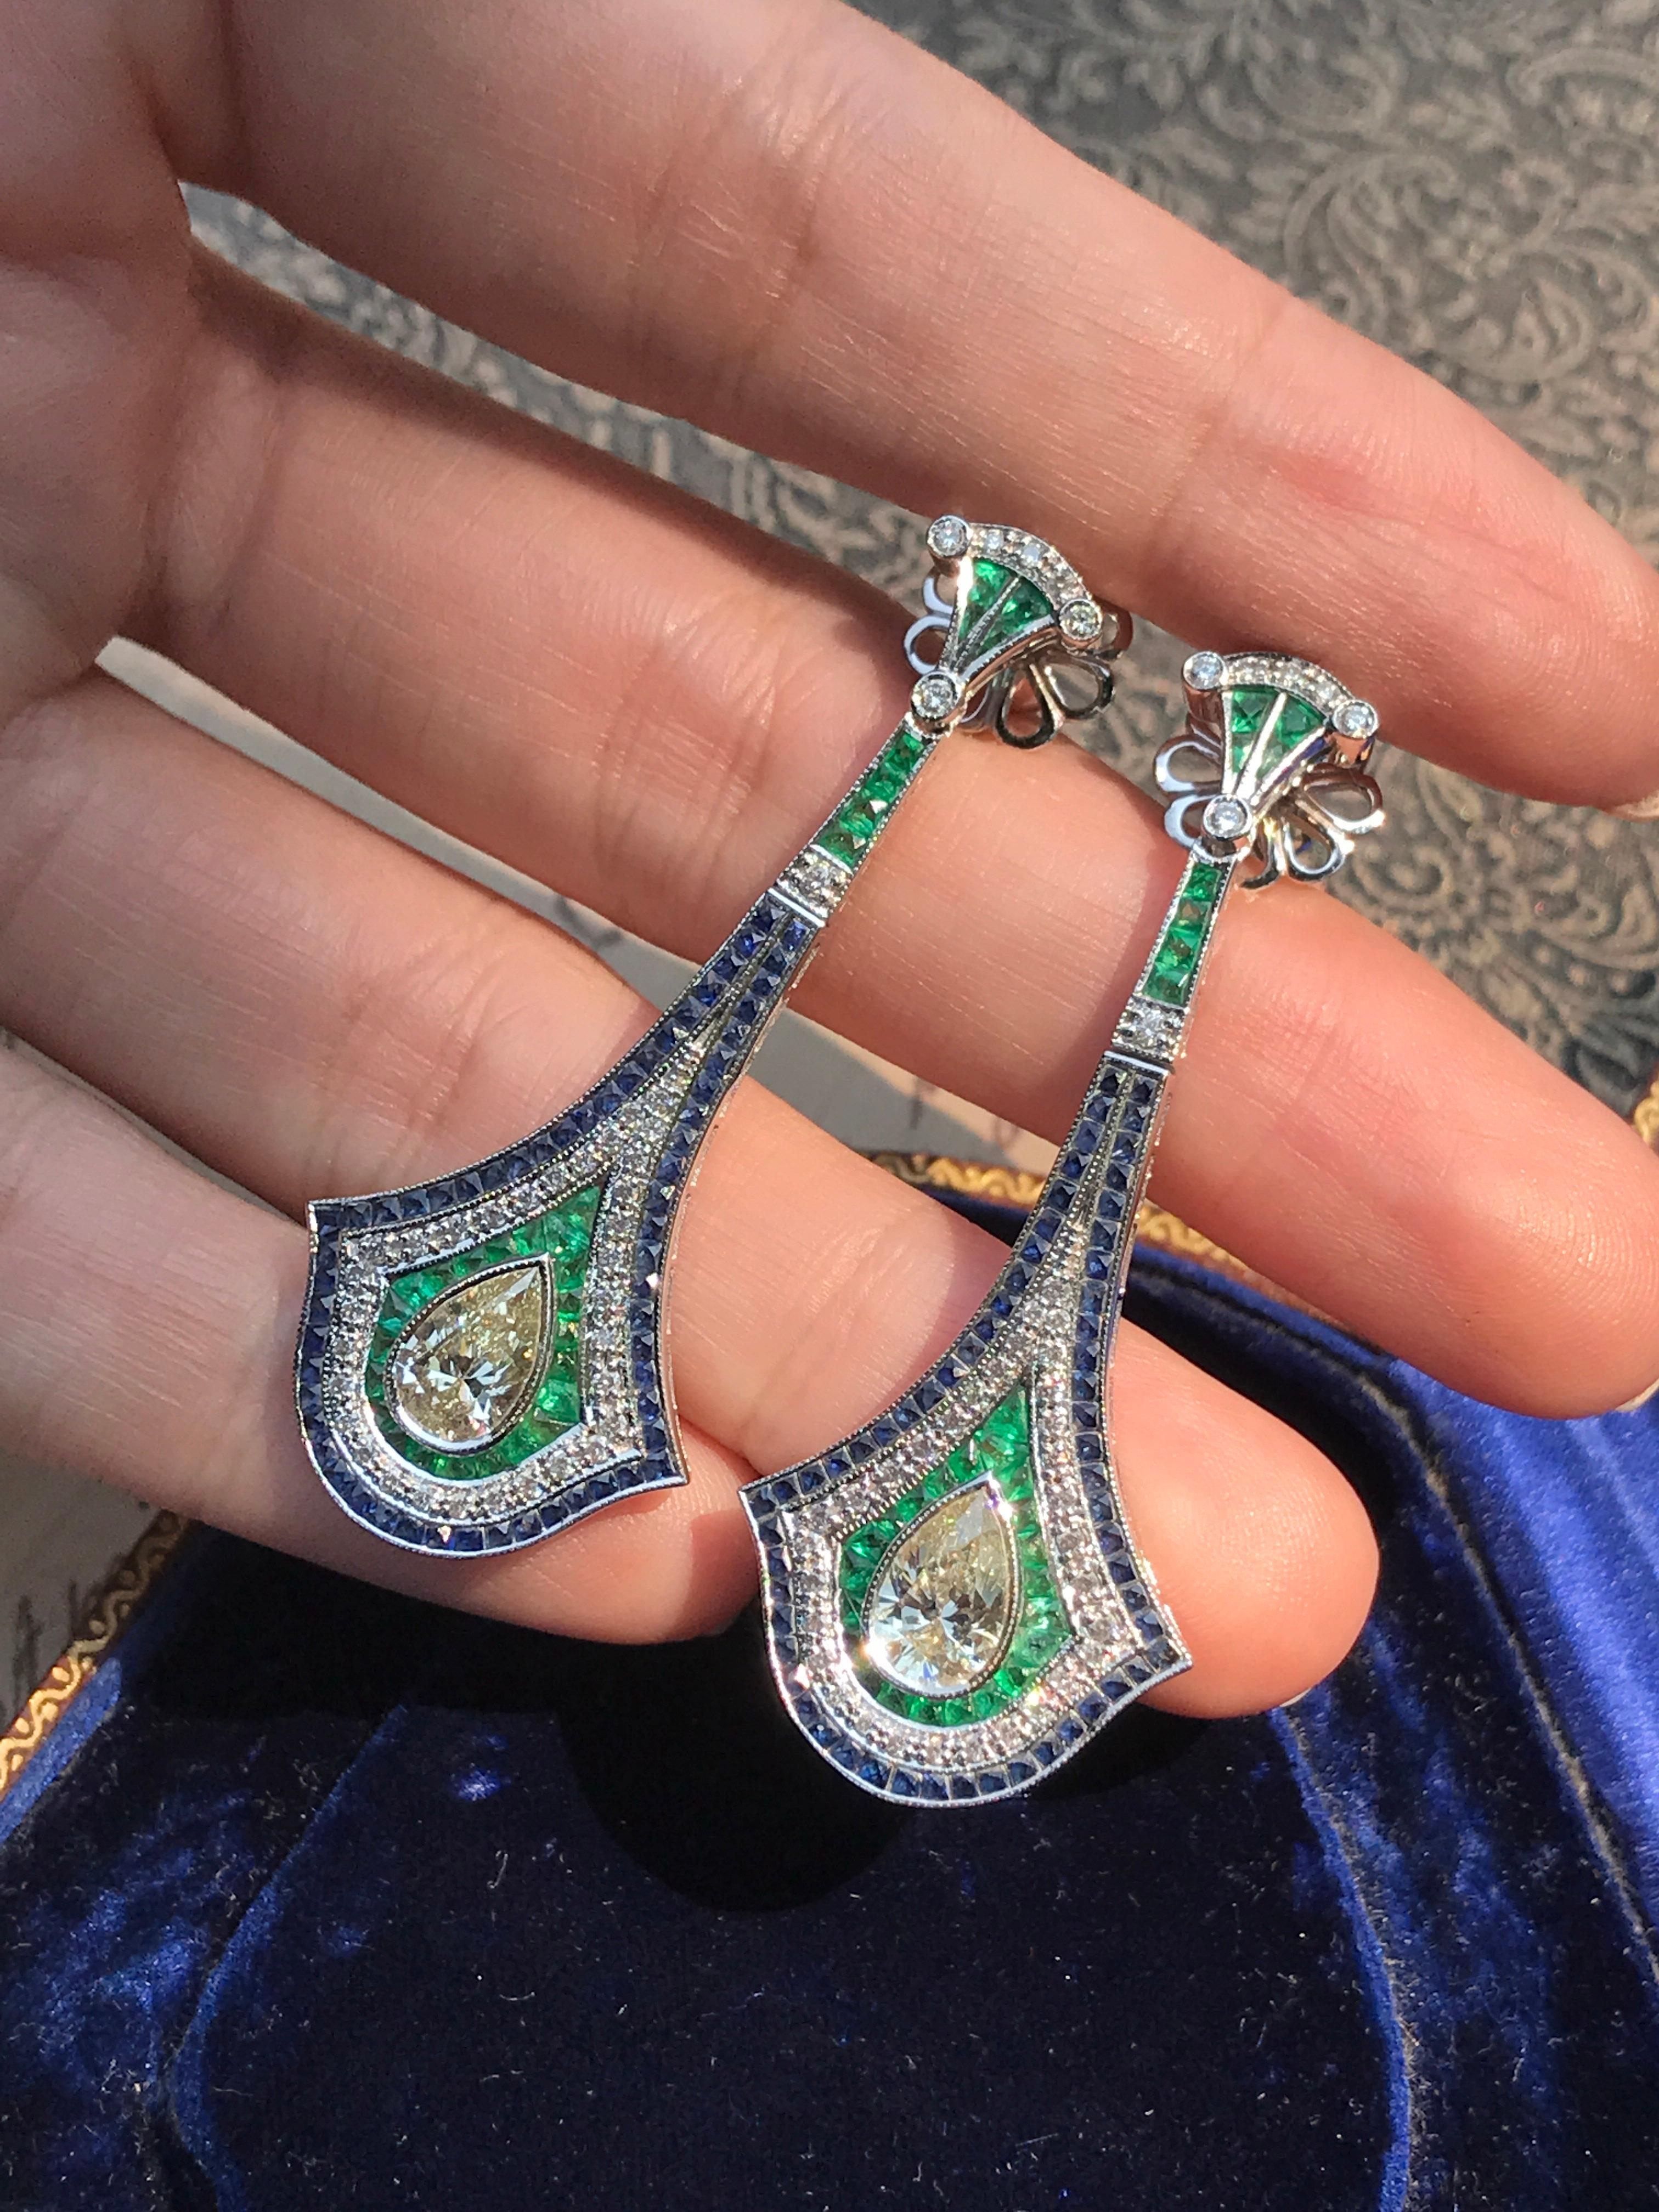 Außergewöhnliche GIA-zertifizierte birnenförmige Diamanten mit Smaragden und Saphiren im Art-déco-Stil, alle in 18 Karat Weißgold gefasst. Die Innenhalo ist mit lebhaften grünen Smaragden im französischen Schliff besetzt. Der Außenring ist mit einem